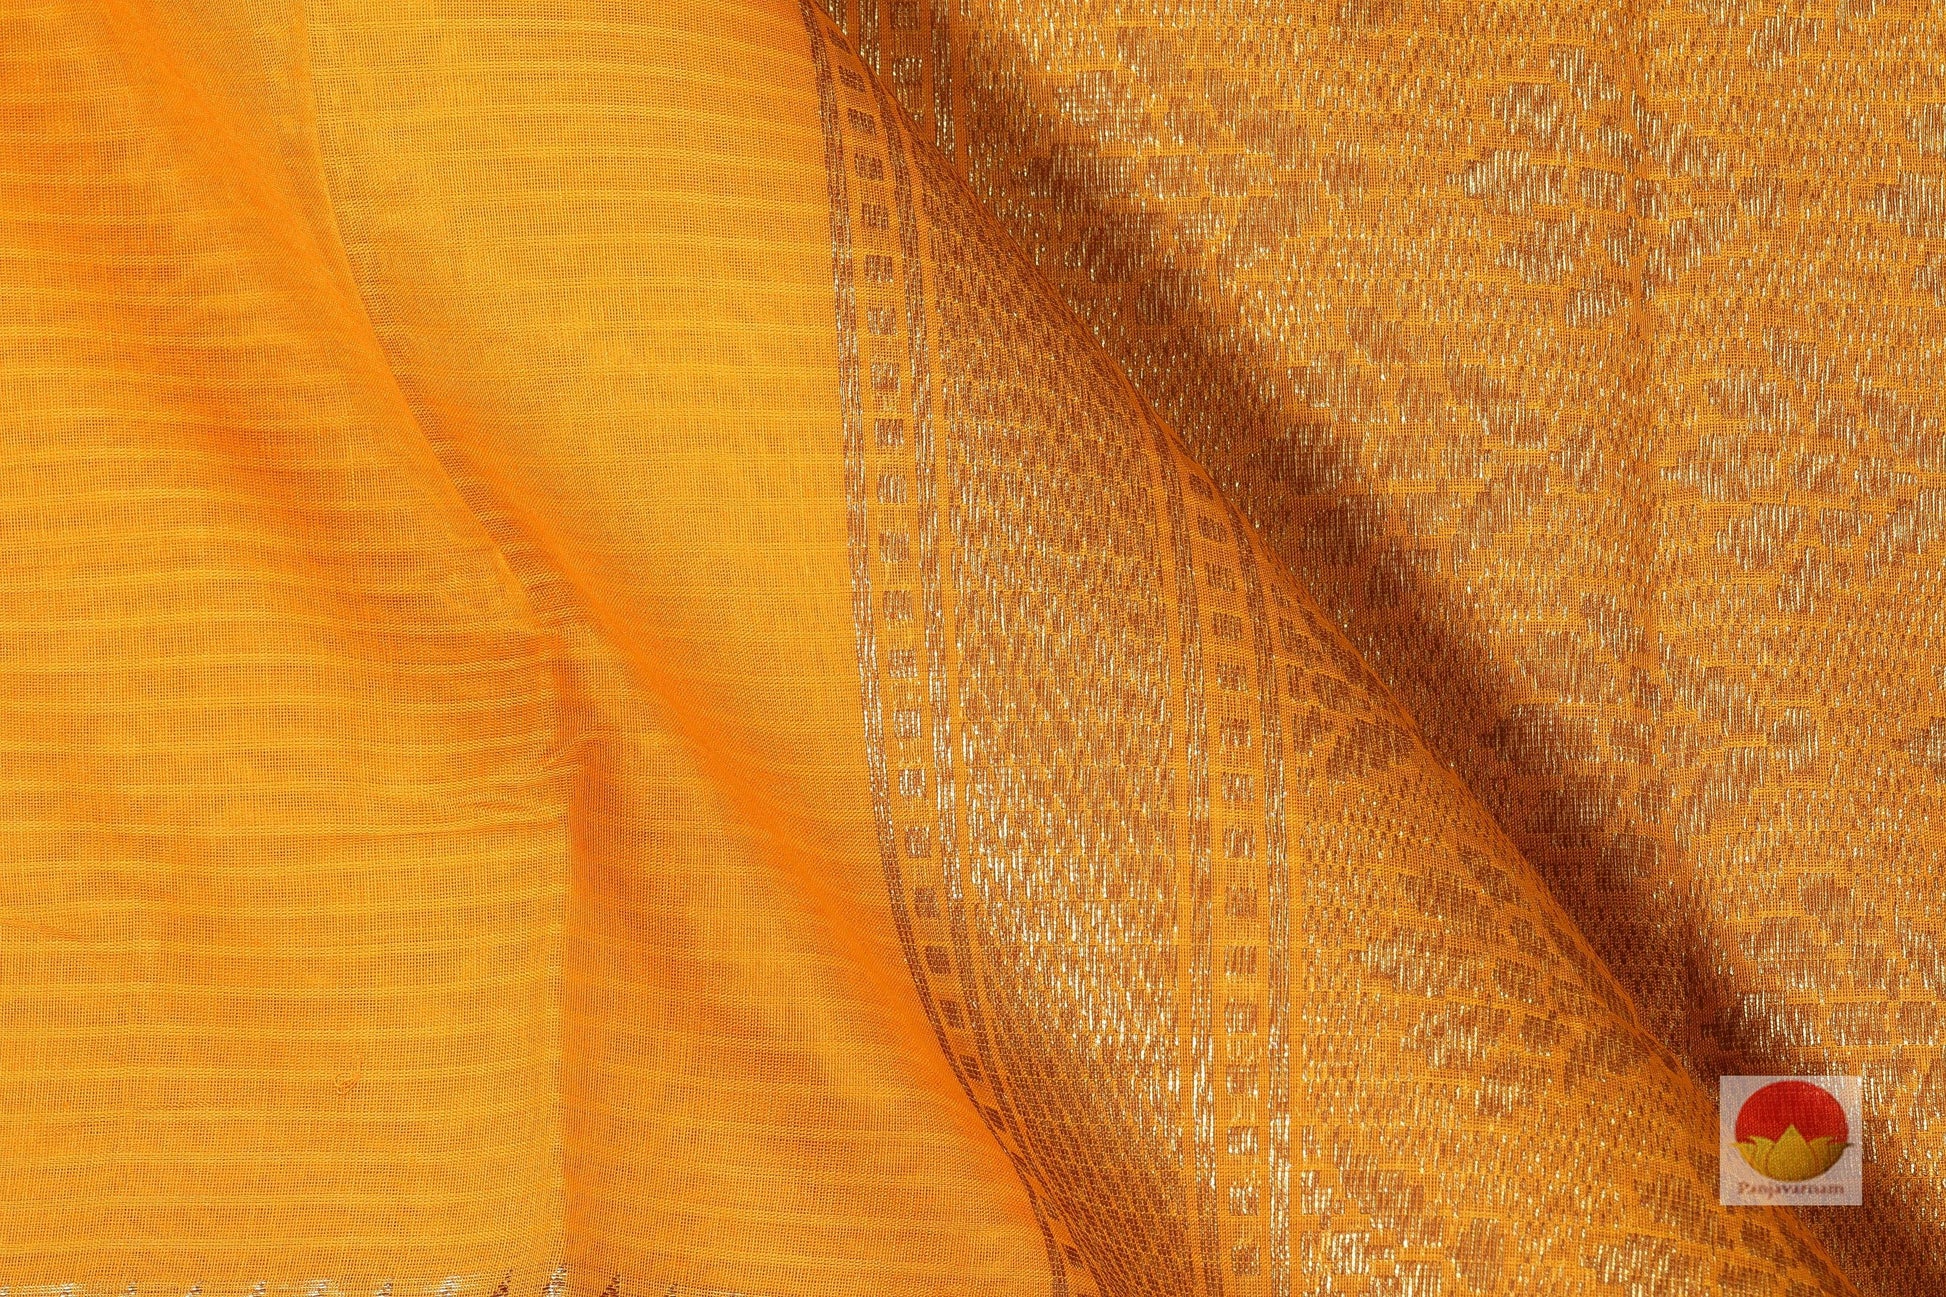 Lite Weight Banarasi Silk Cotton Saree - PSC 275 - Silk Cotton - Panjavarnam